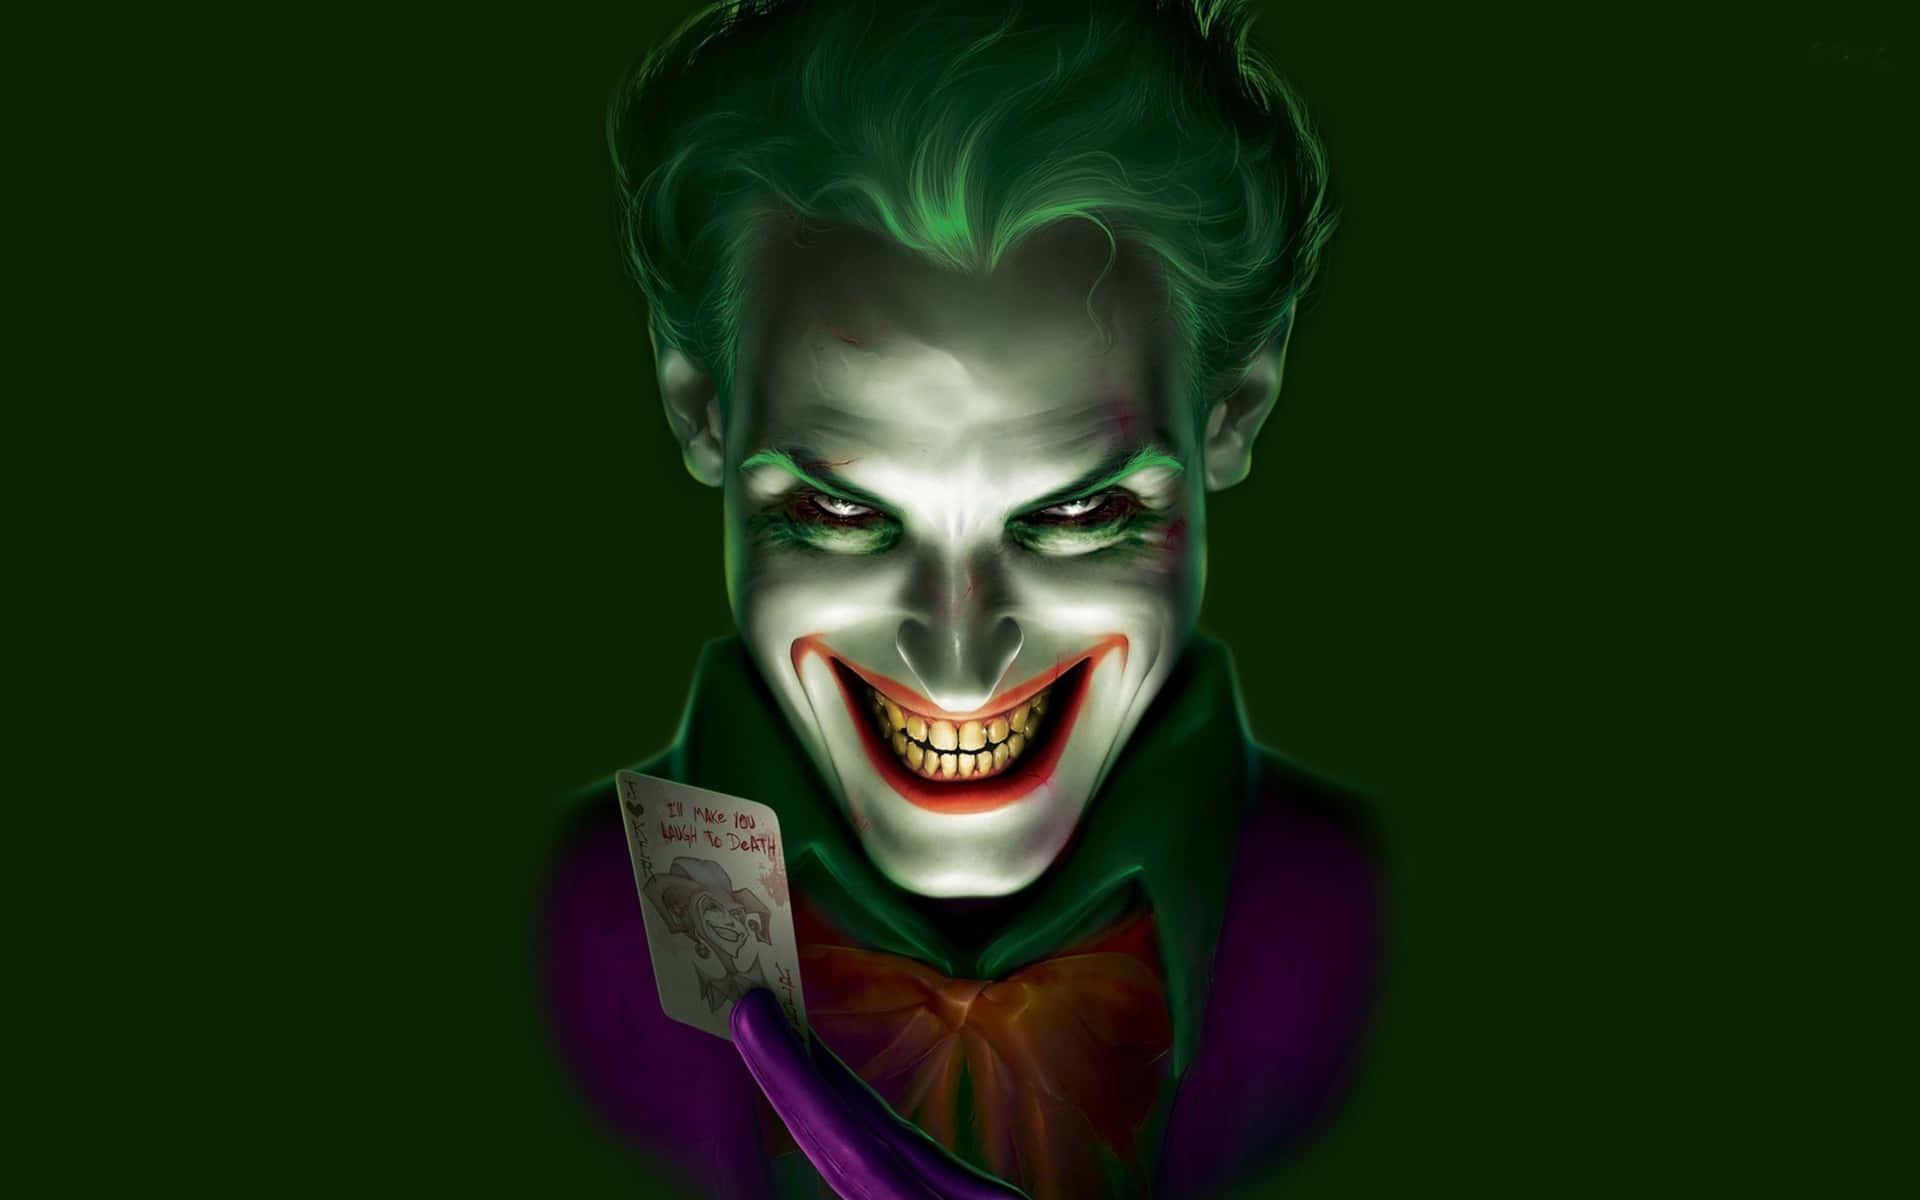 Menacing Figure In Green, The Dangerous Joker Background